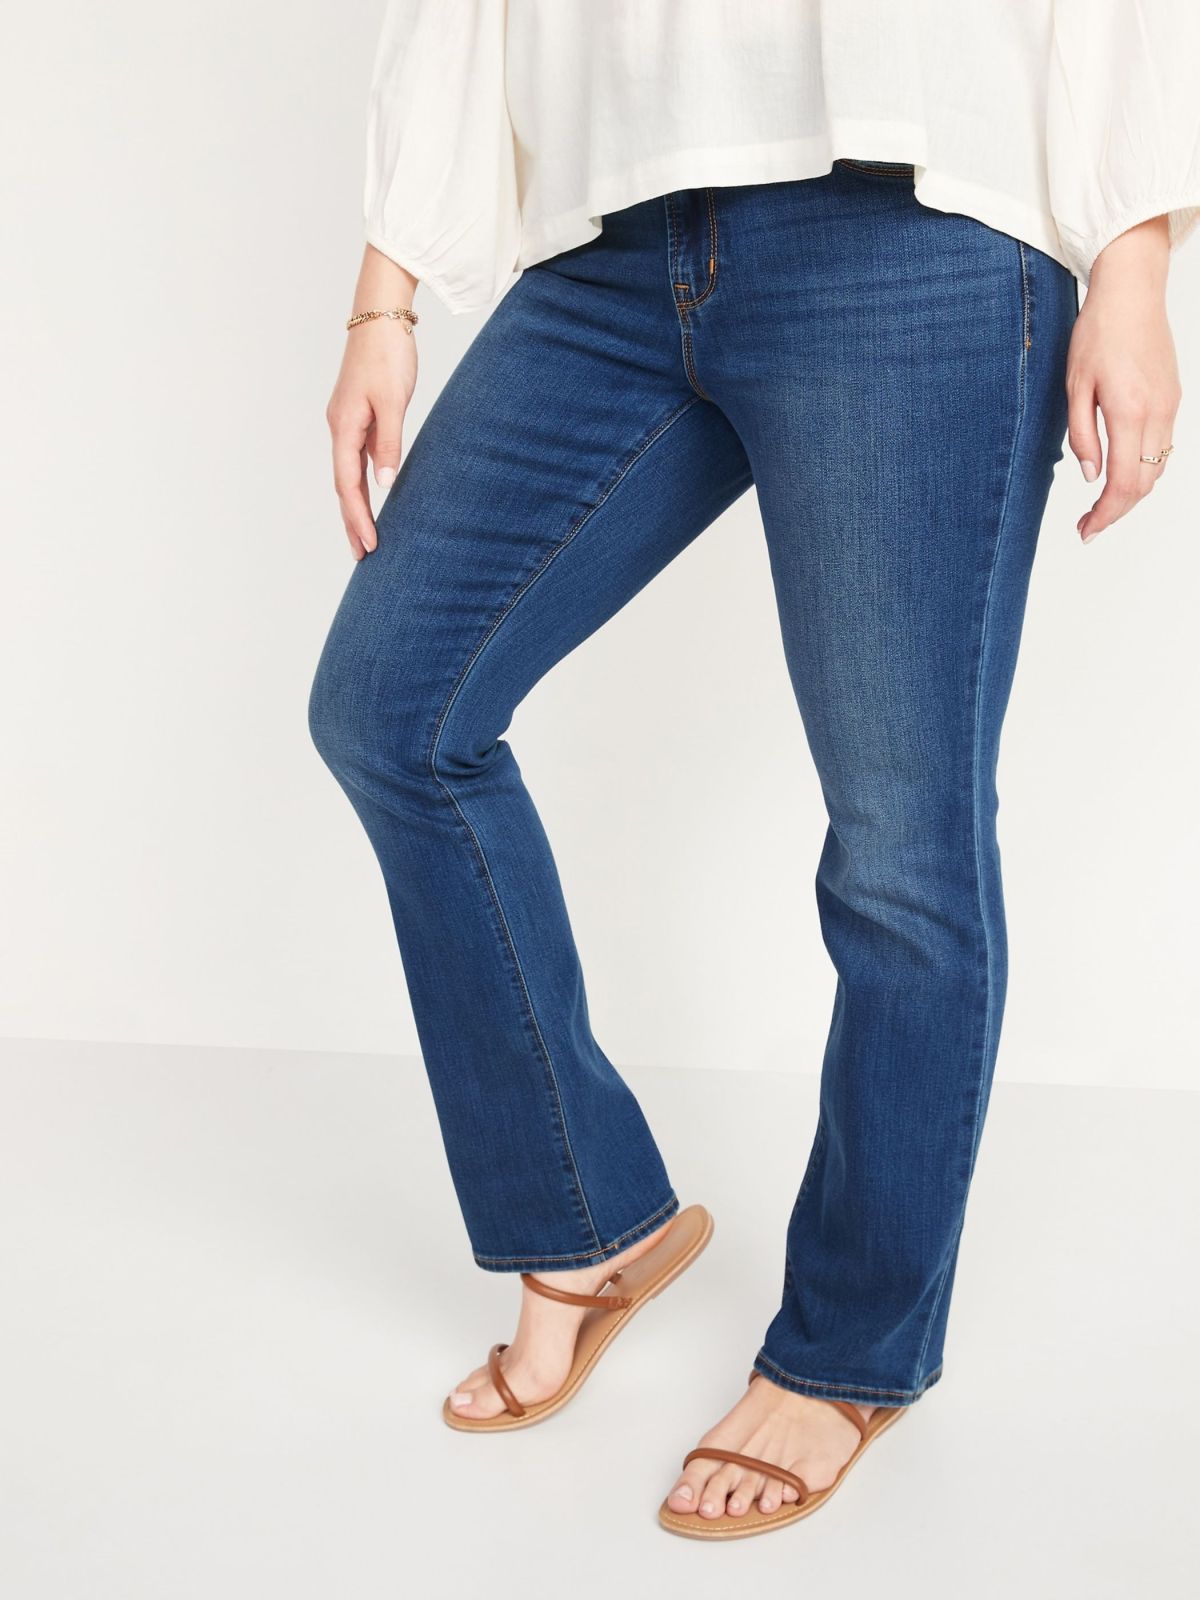  ג'ינס ארוך בגזרת FLARE של OLD NAVY